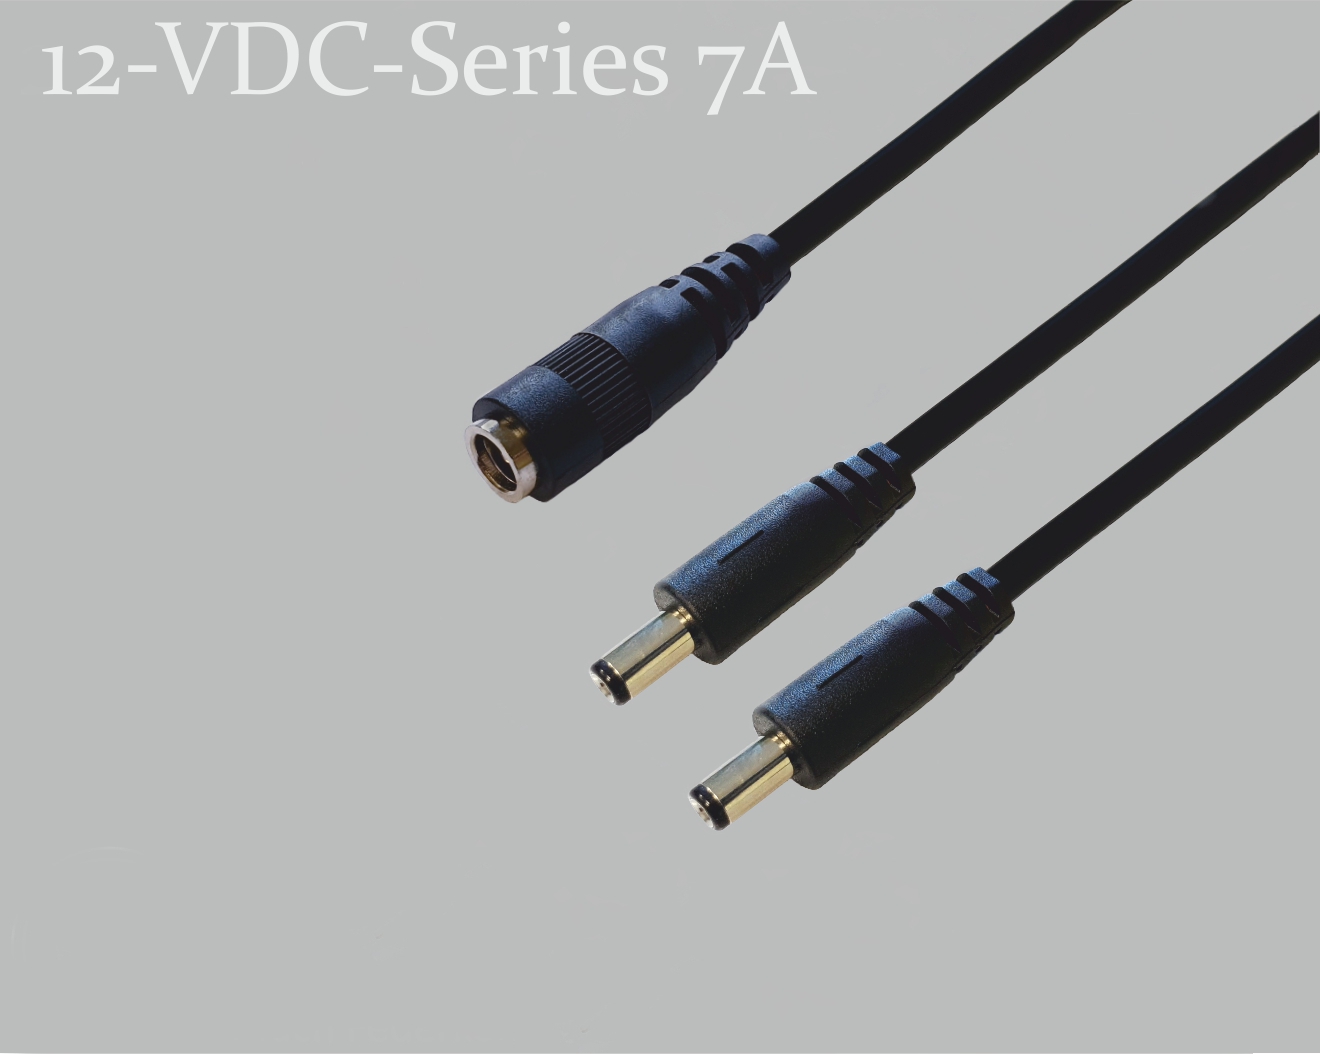 12-VDC-Series 7A, DC-Verteiler 1x DC-Kupplung auf 2x DC-Stecker mit Federkontakt,  2,1x5,5mm, Rundkabel 2x0,5mm², schwarz, 0,3m